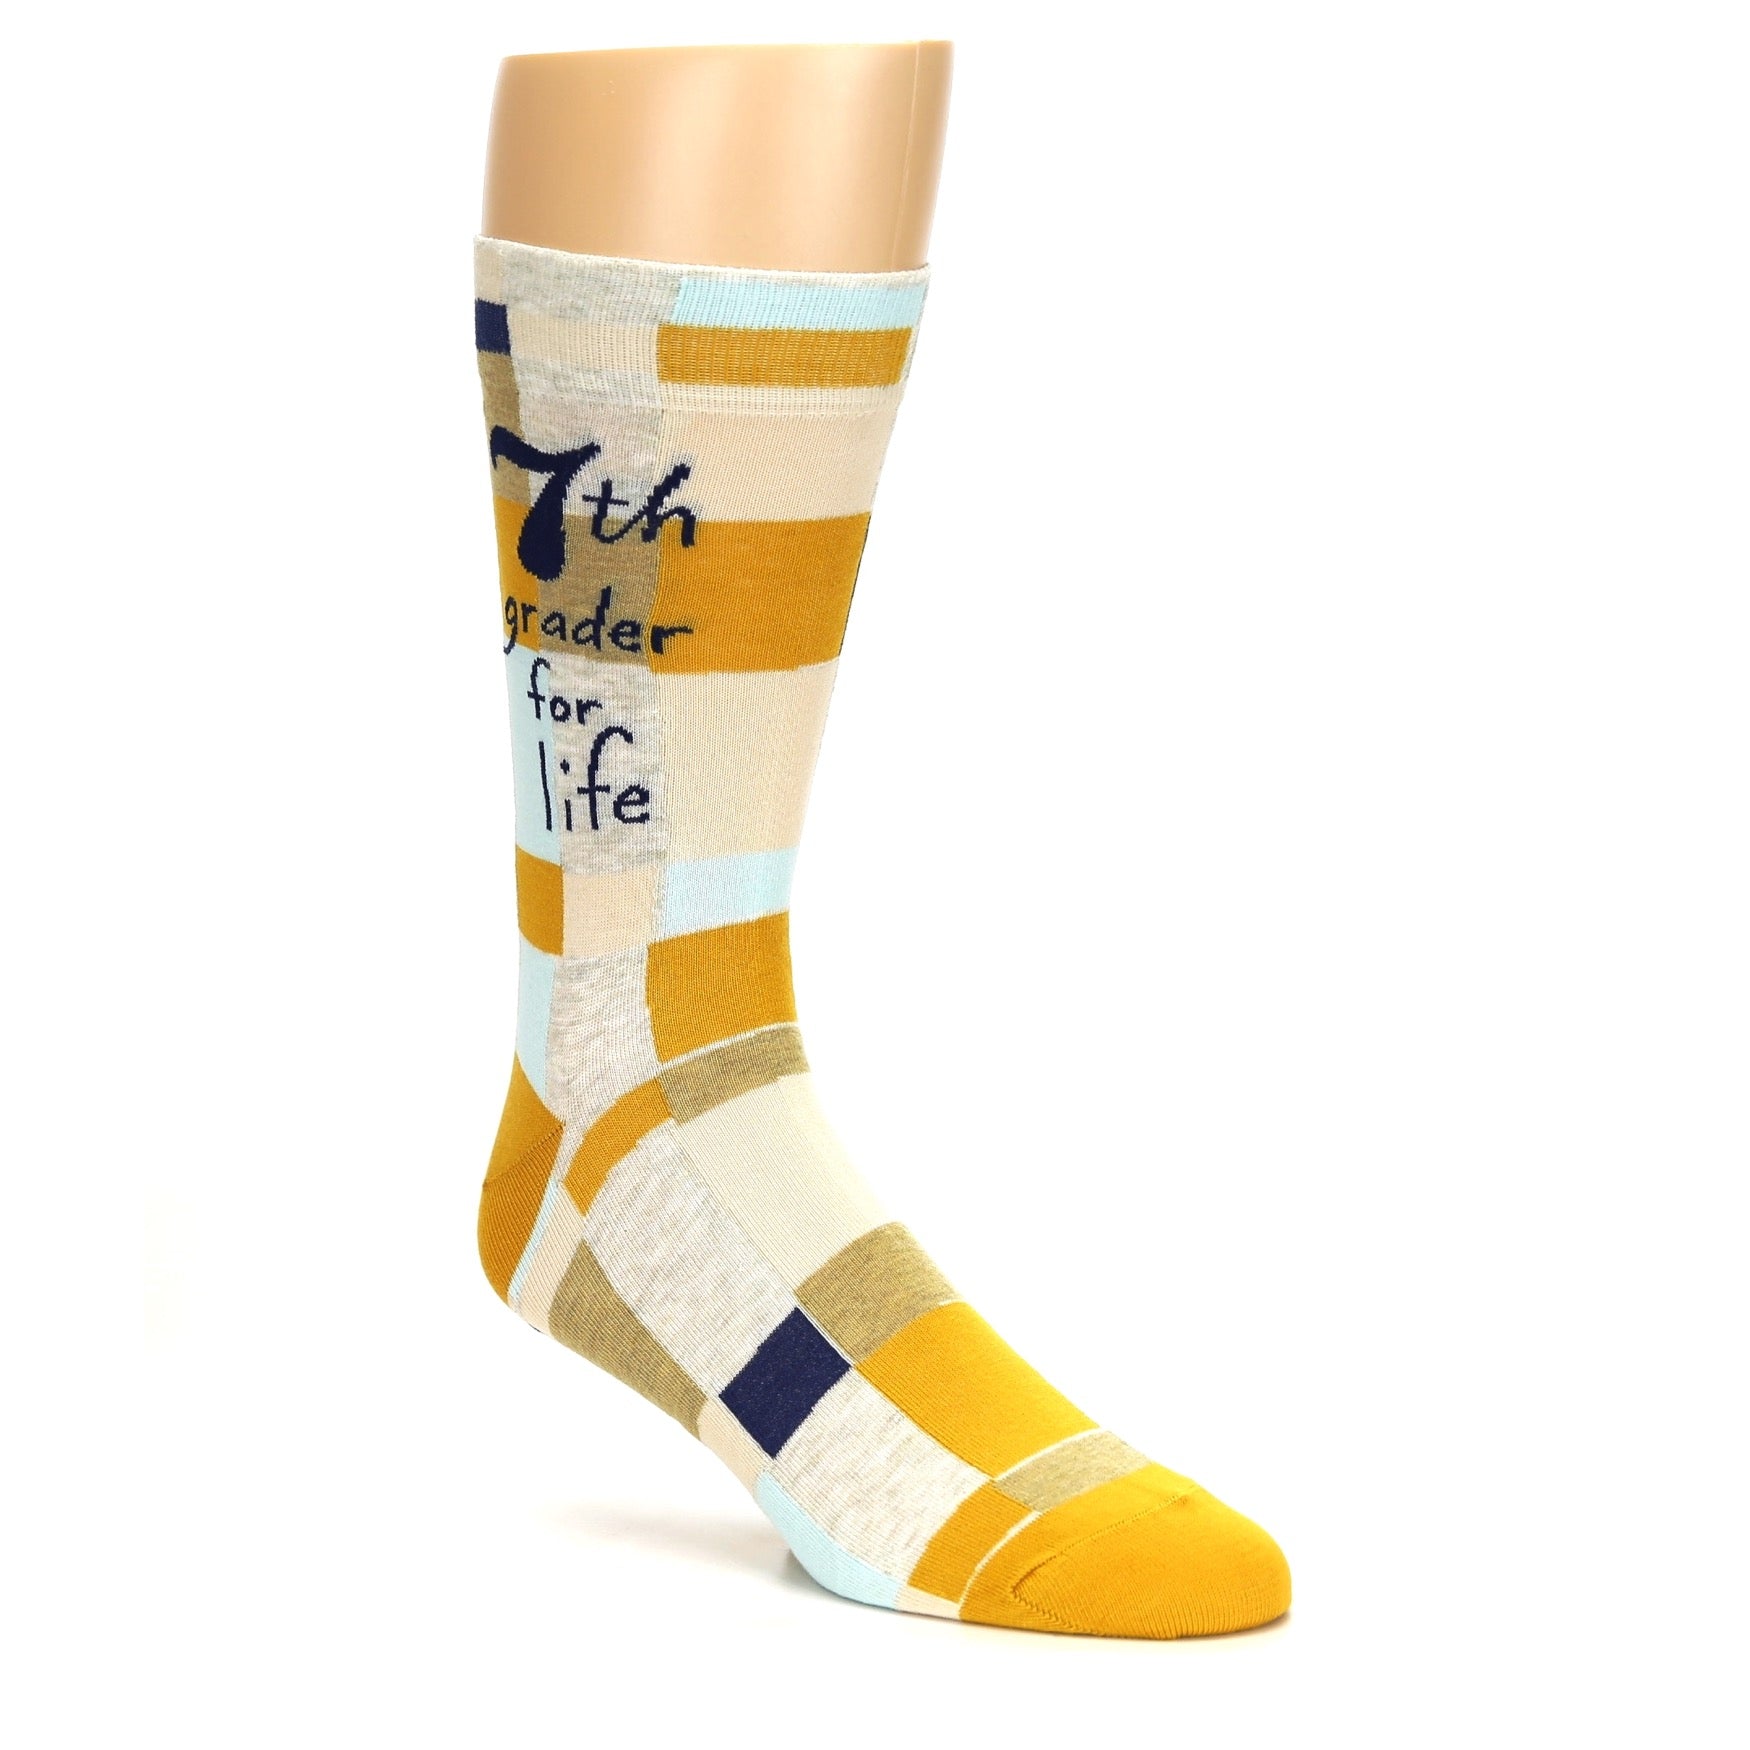 7th Grader for Life Socks - Men's Novelty Dress Socks